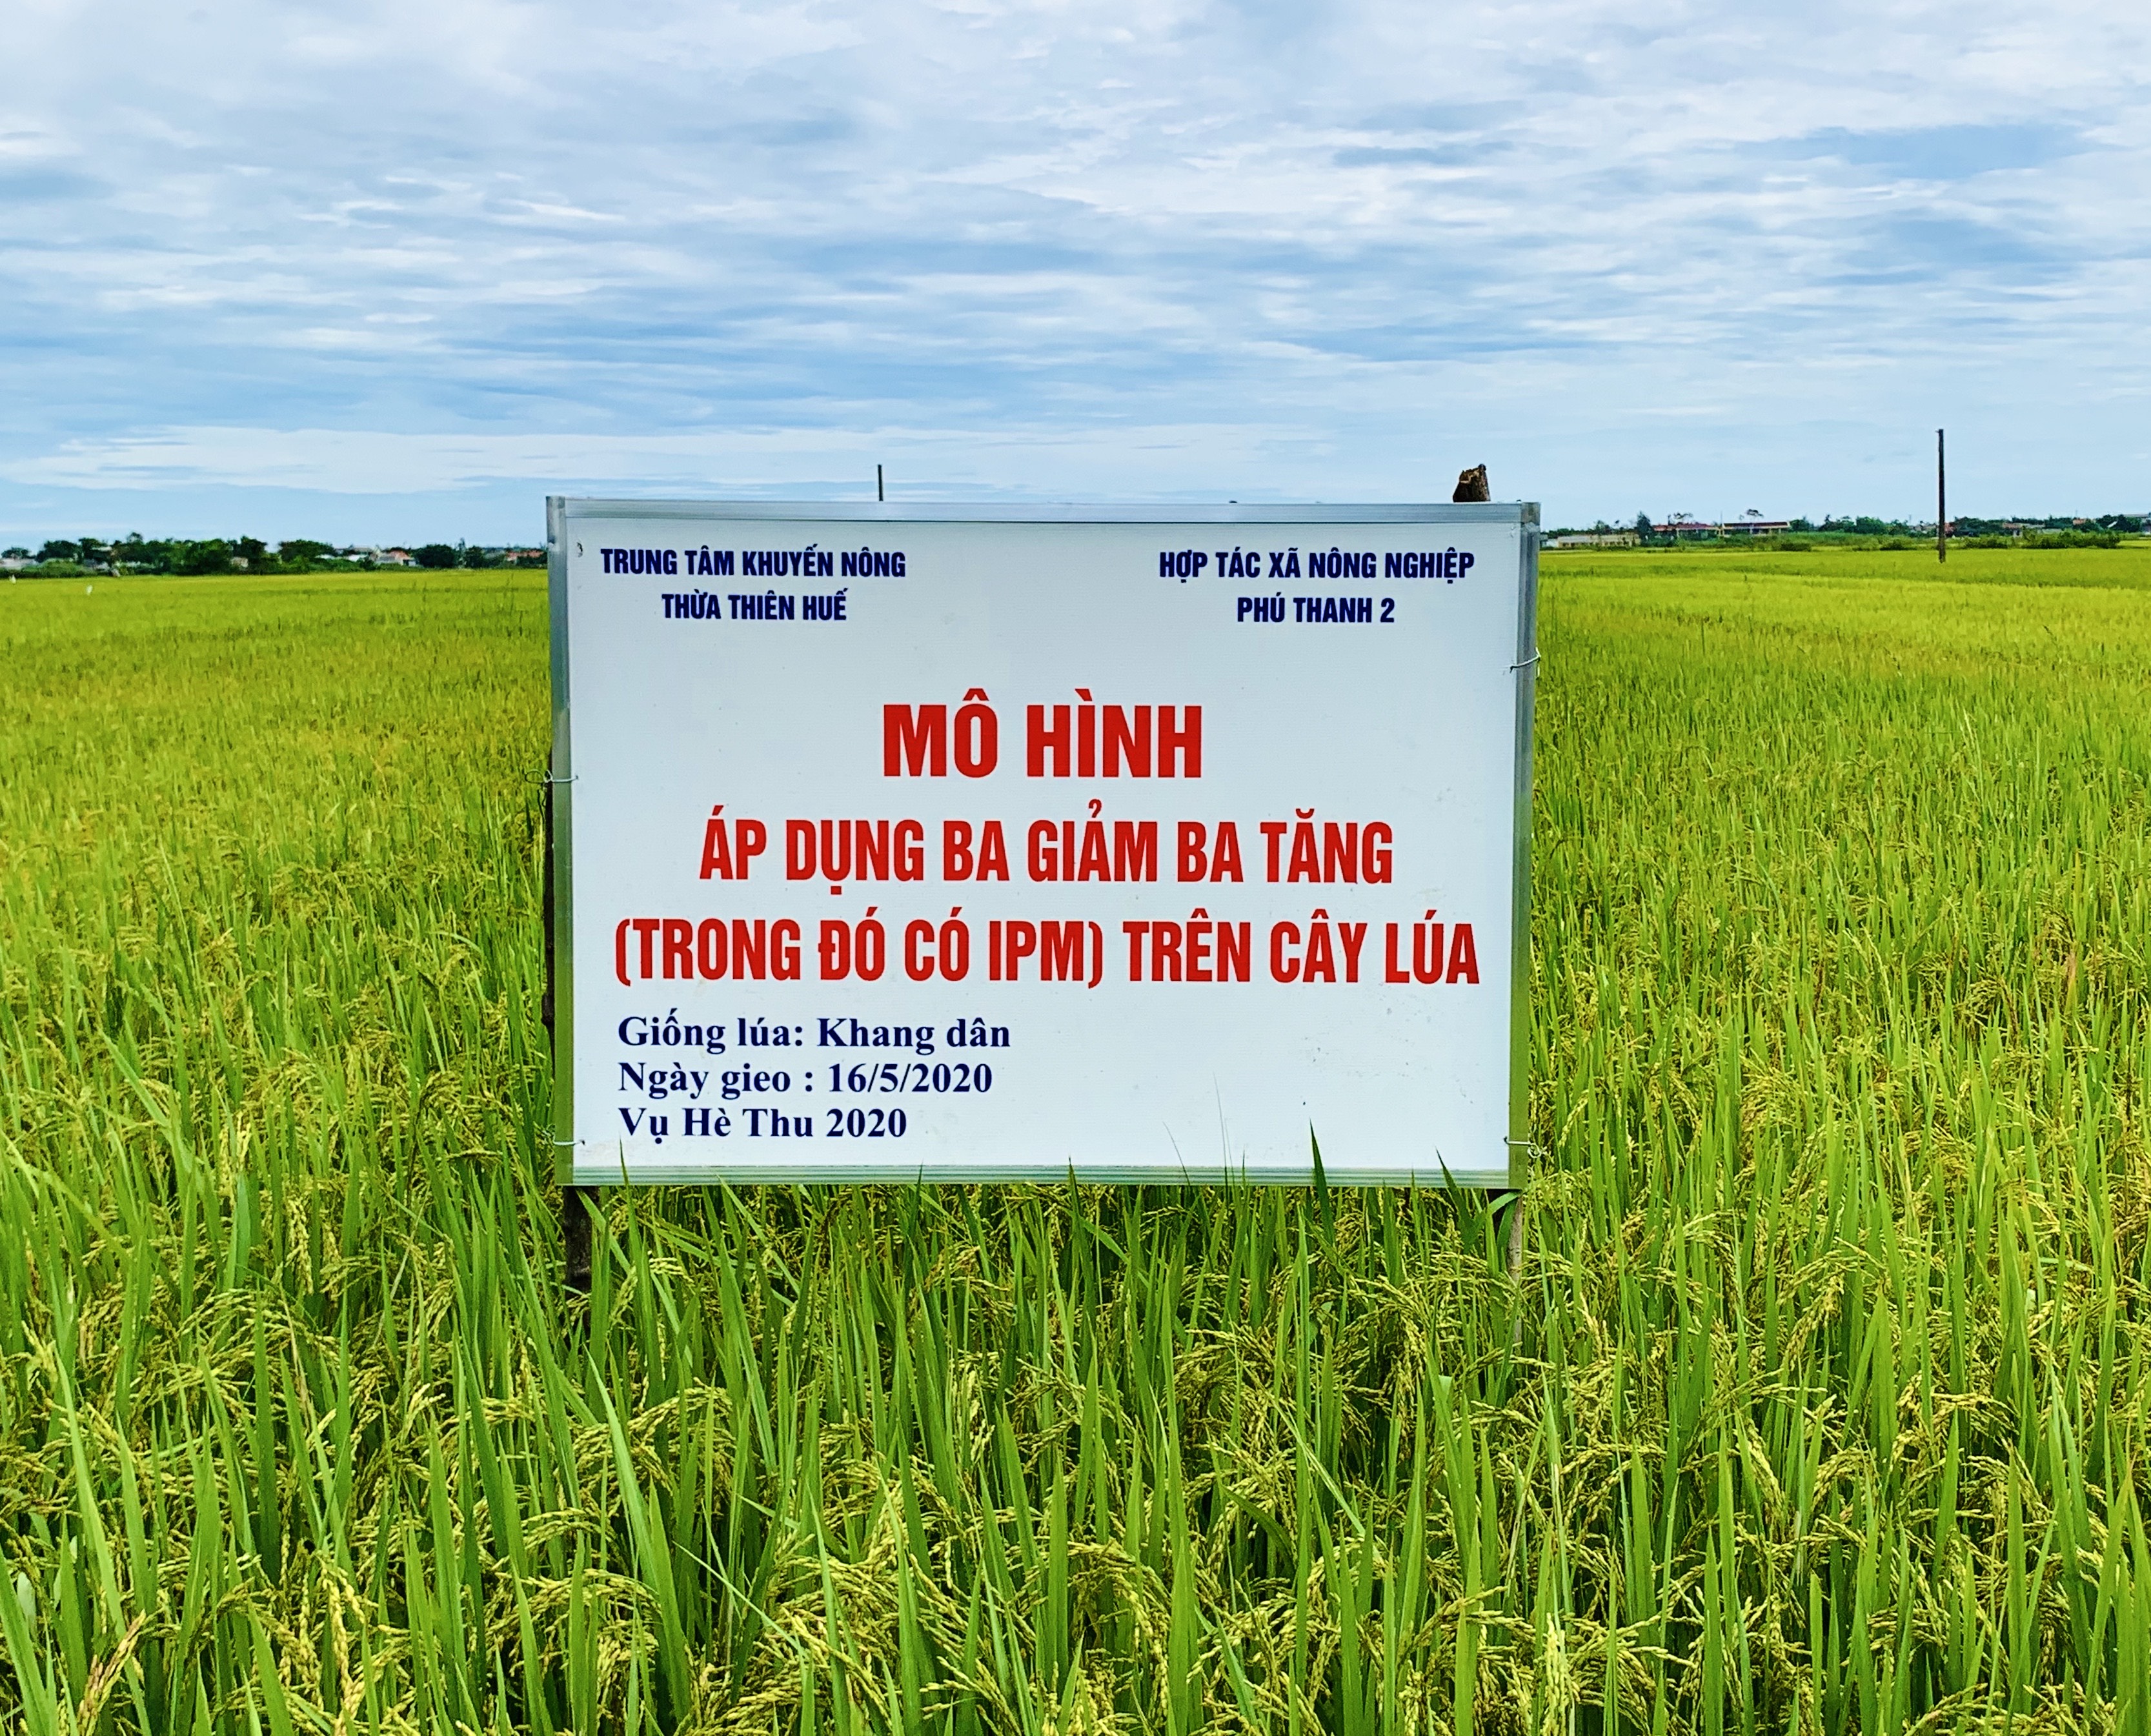 Mo hình 3 giảm 3 tăng" trong sản xuất lúa